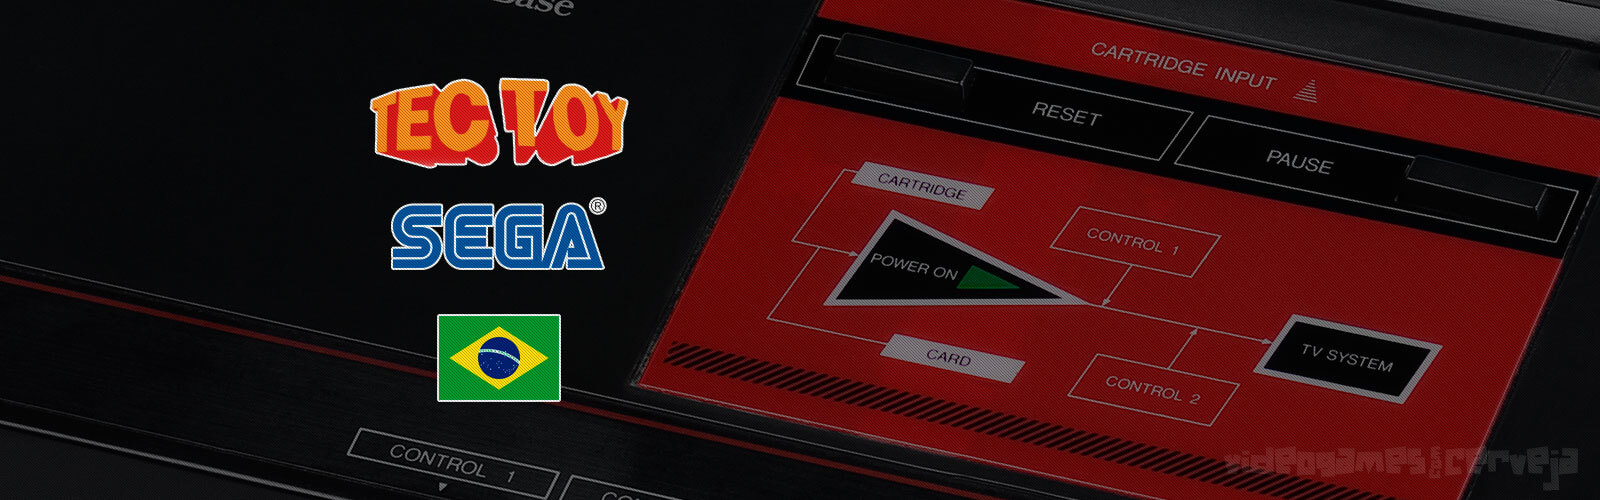 Lista completa dos jogos de Master System lançados pela Tectoy no Brasil Cover